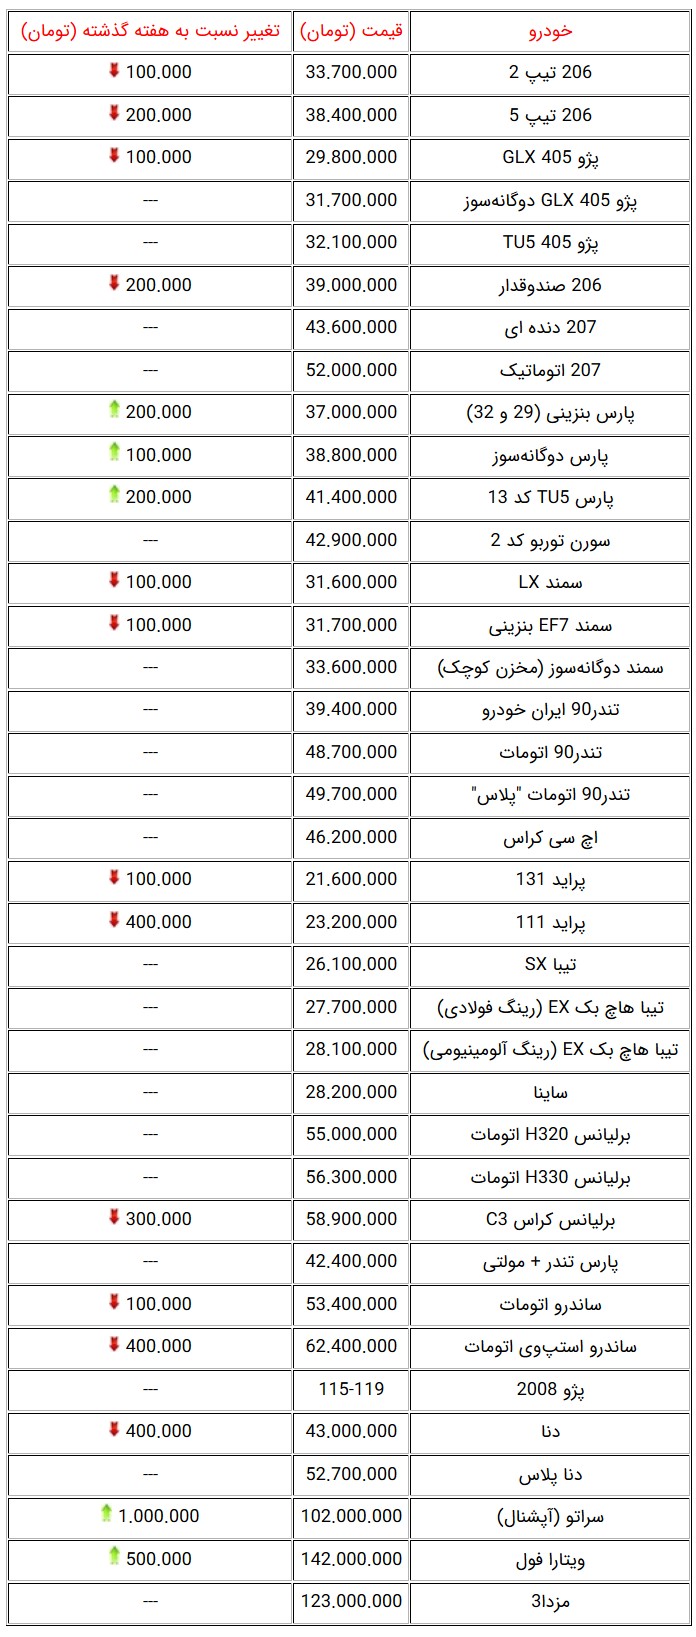  قیمت خودروهای صفرکیلومتر داخلی در بازار تهران در شروع هفته سوم آبان 96 